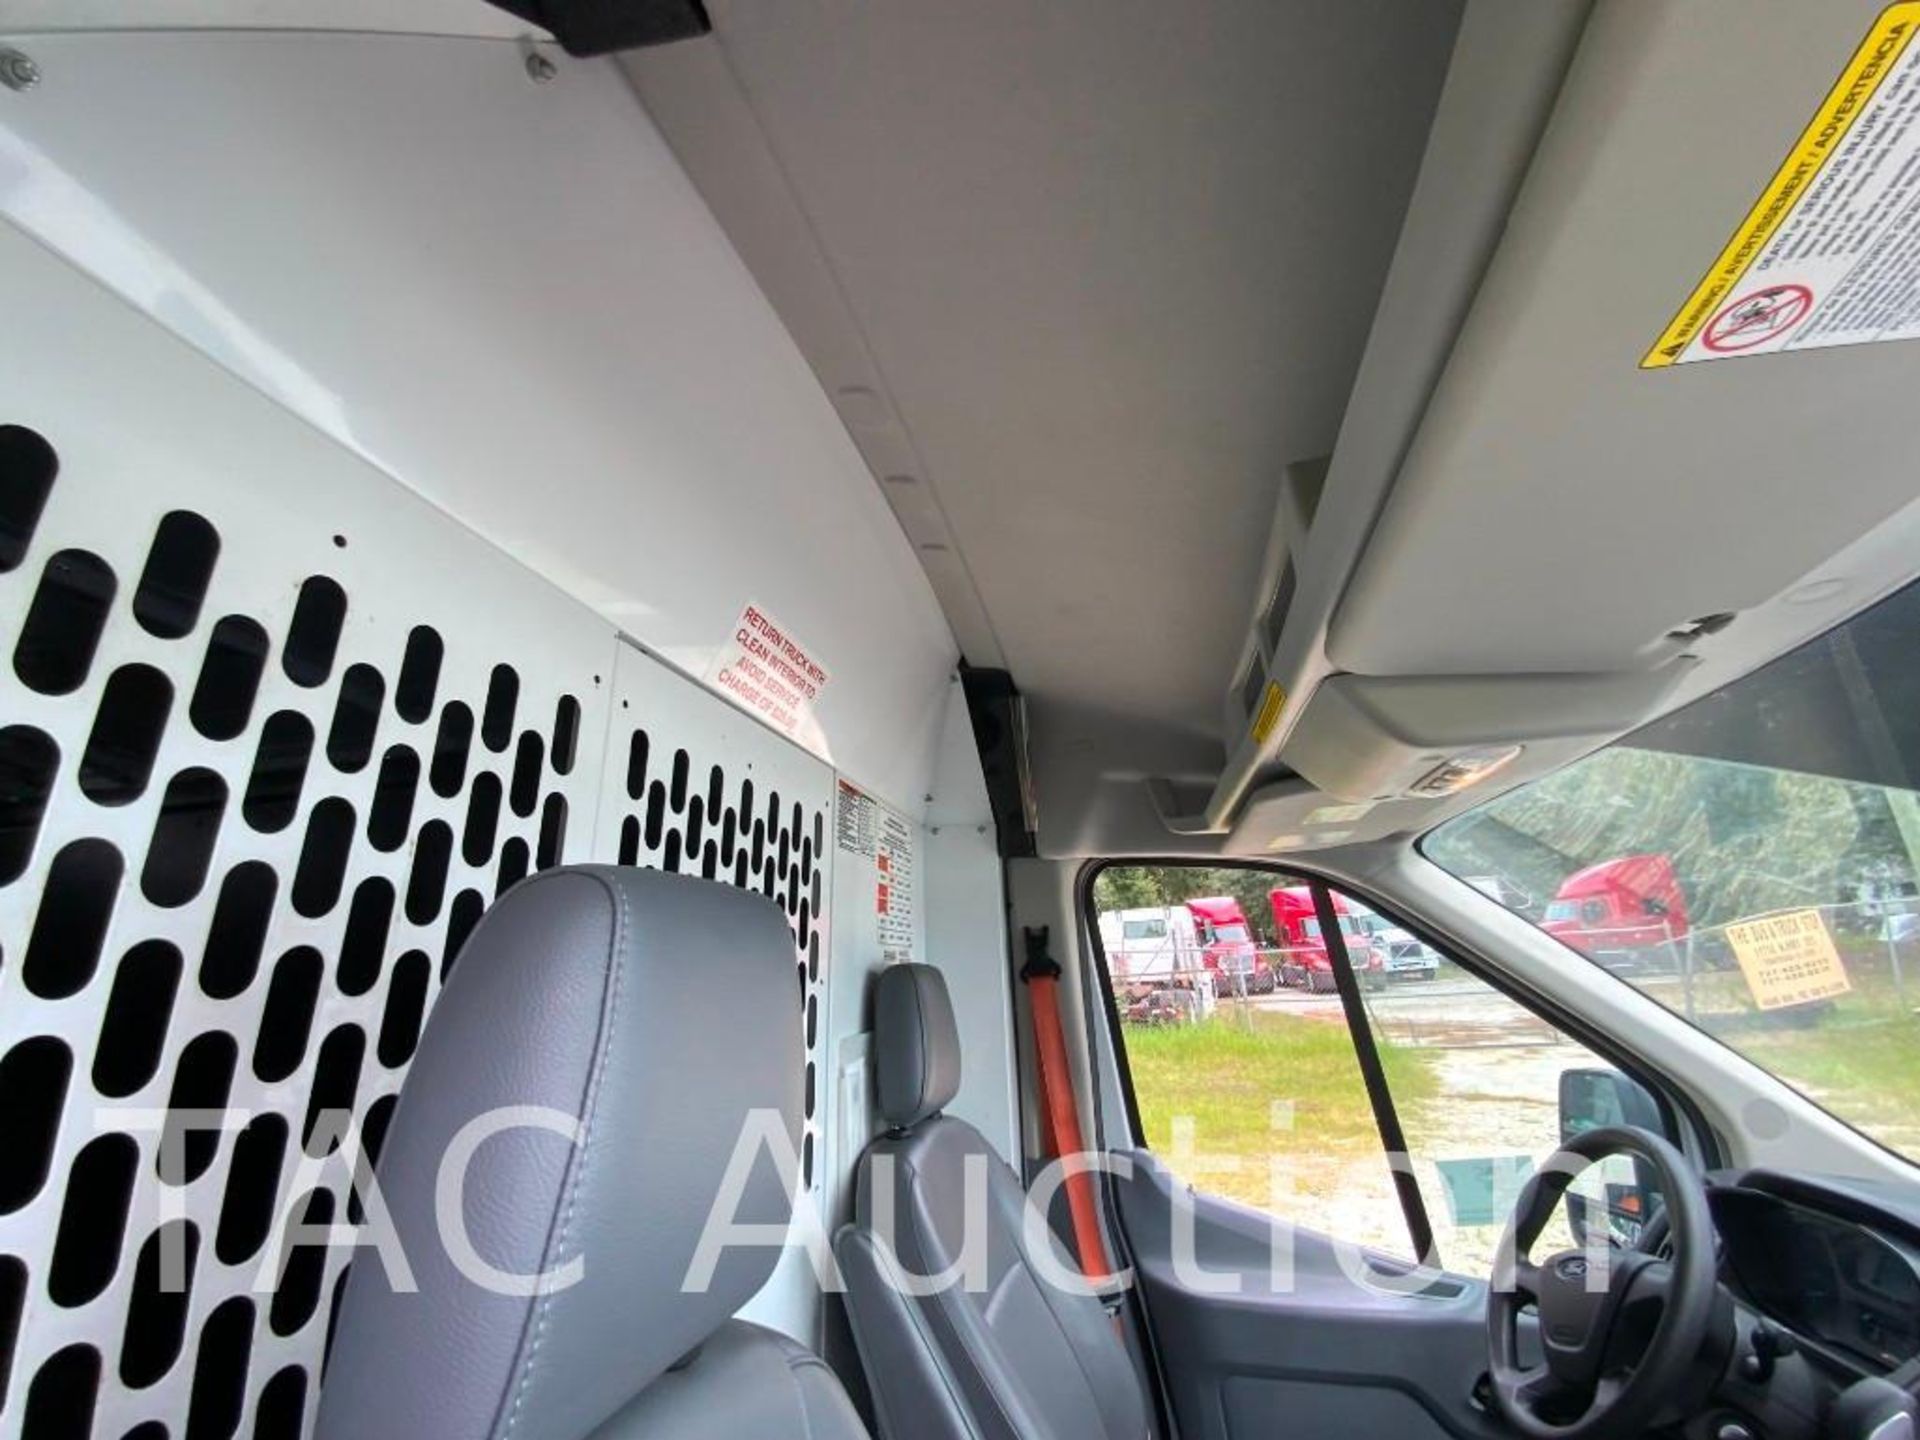 2019 Ford Transit 150 Cargo Van - Image 22 of 54